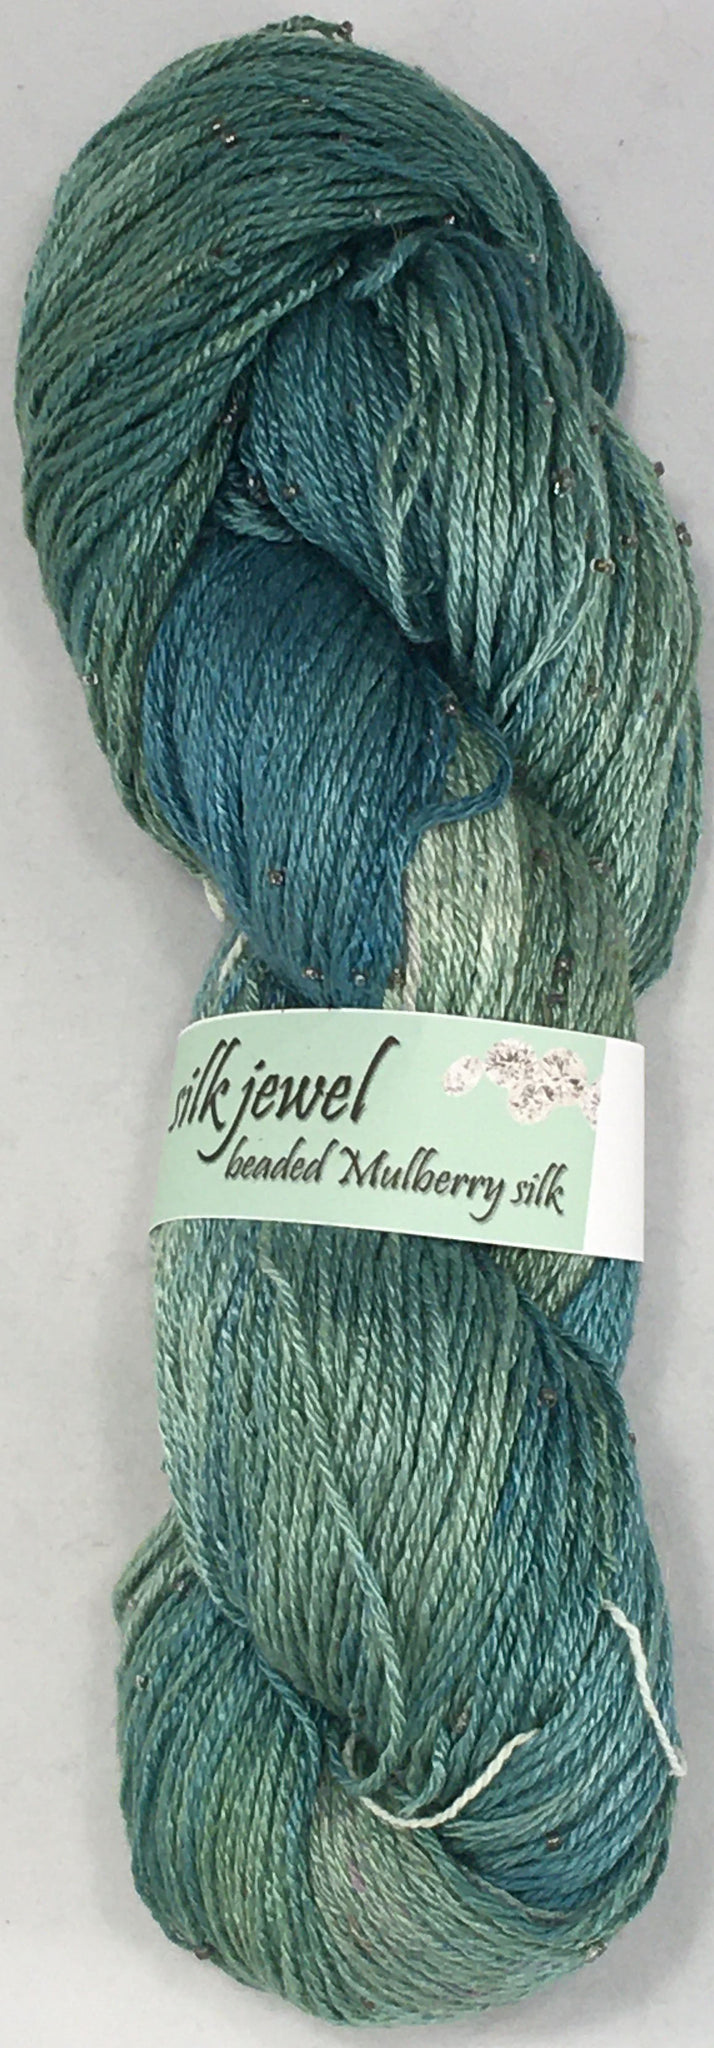 Silk Jewel  #J125